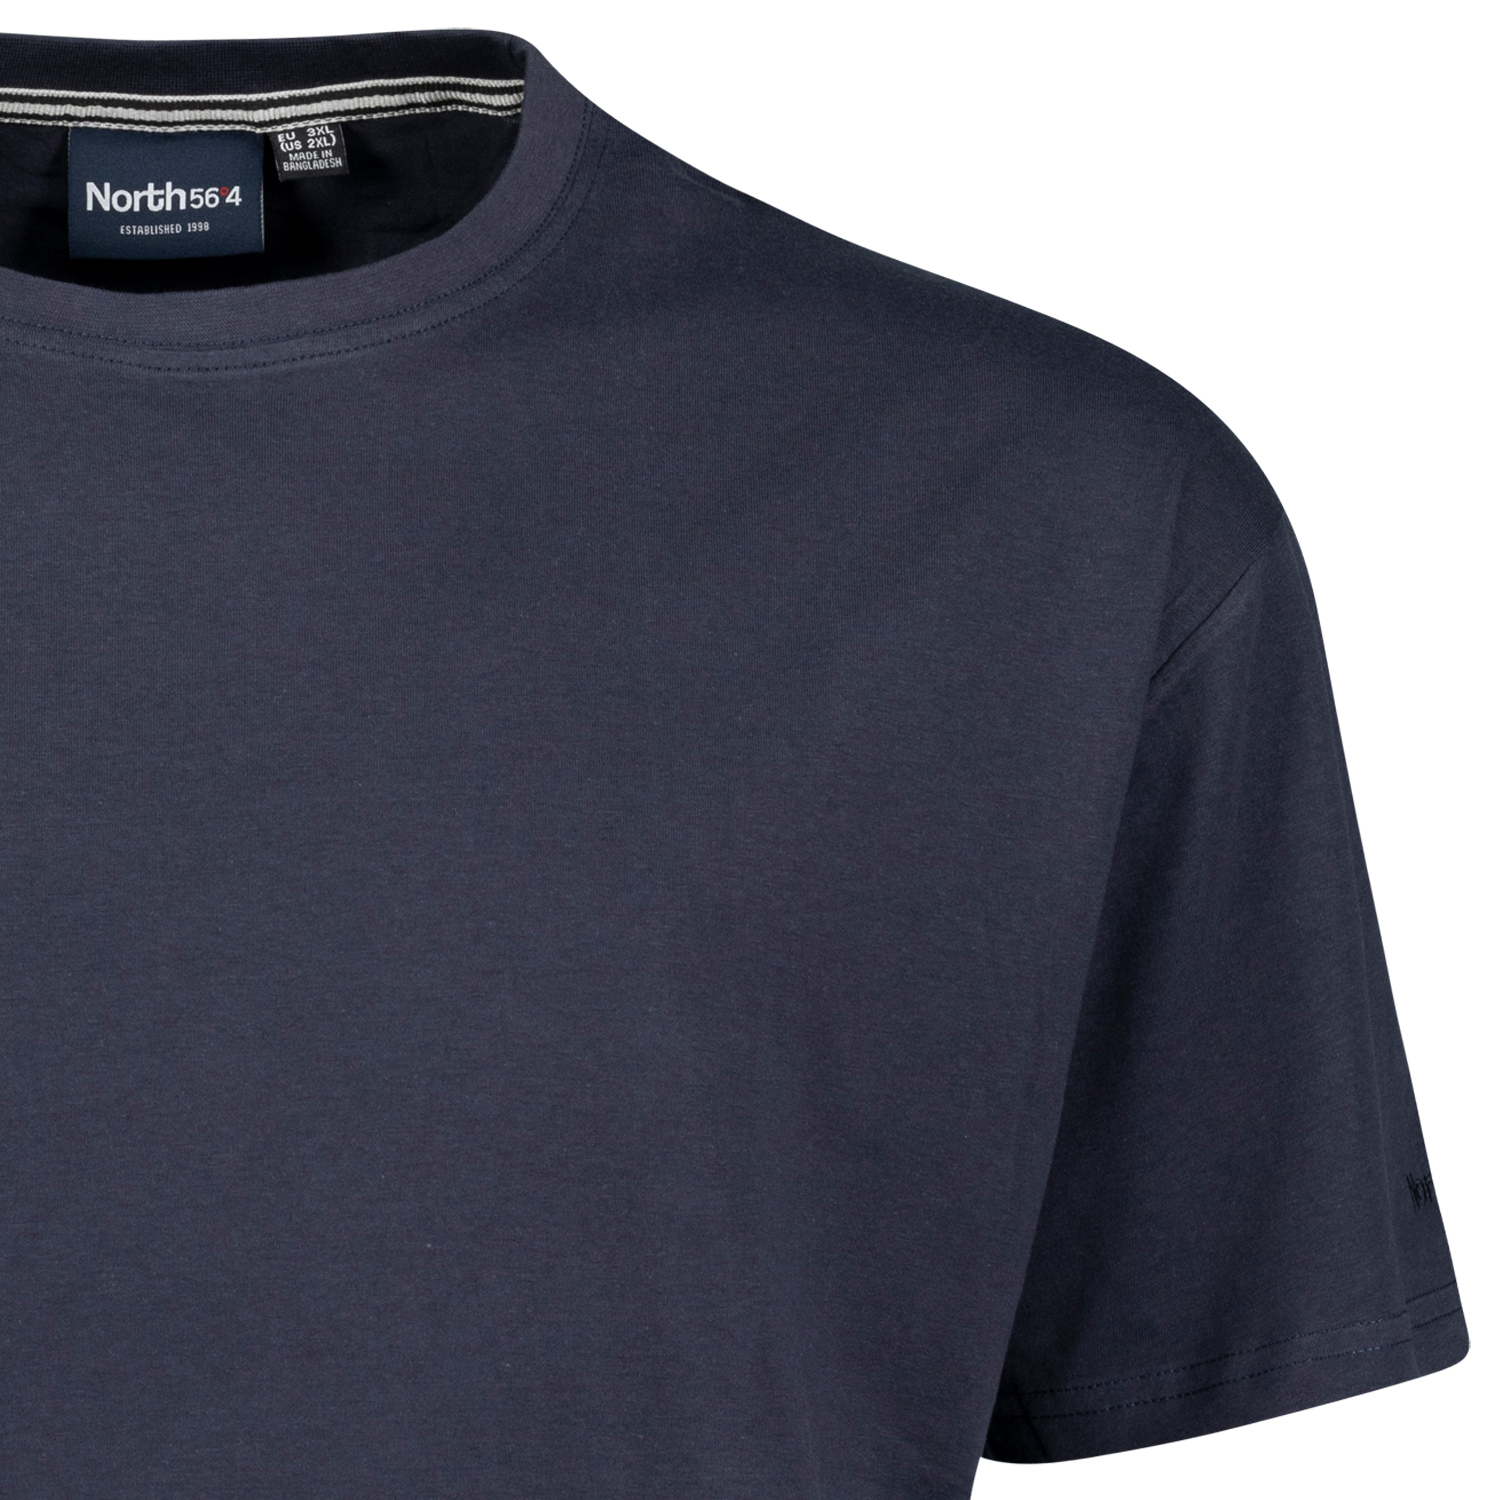 Basic-T-Shirt in dunkelblau von North 56°4 in großen Größen bis 8 XL